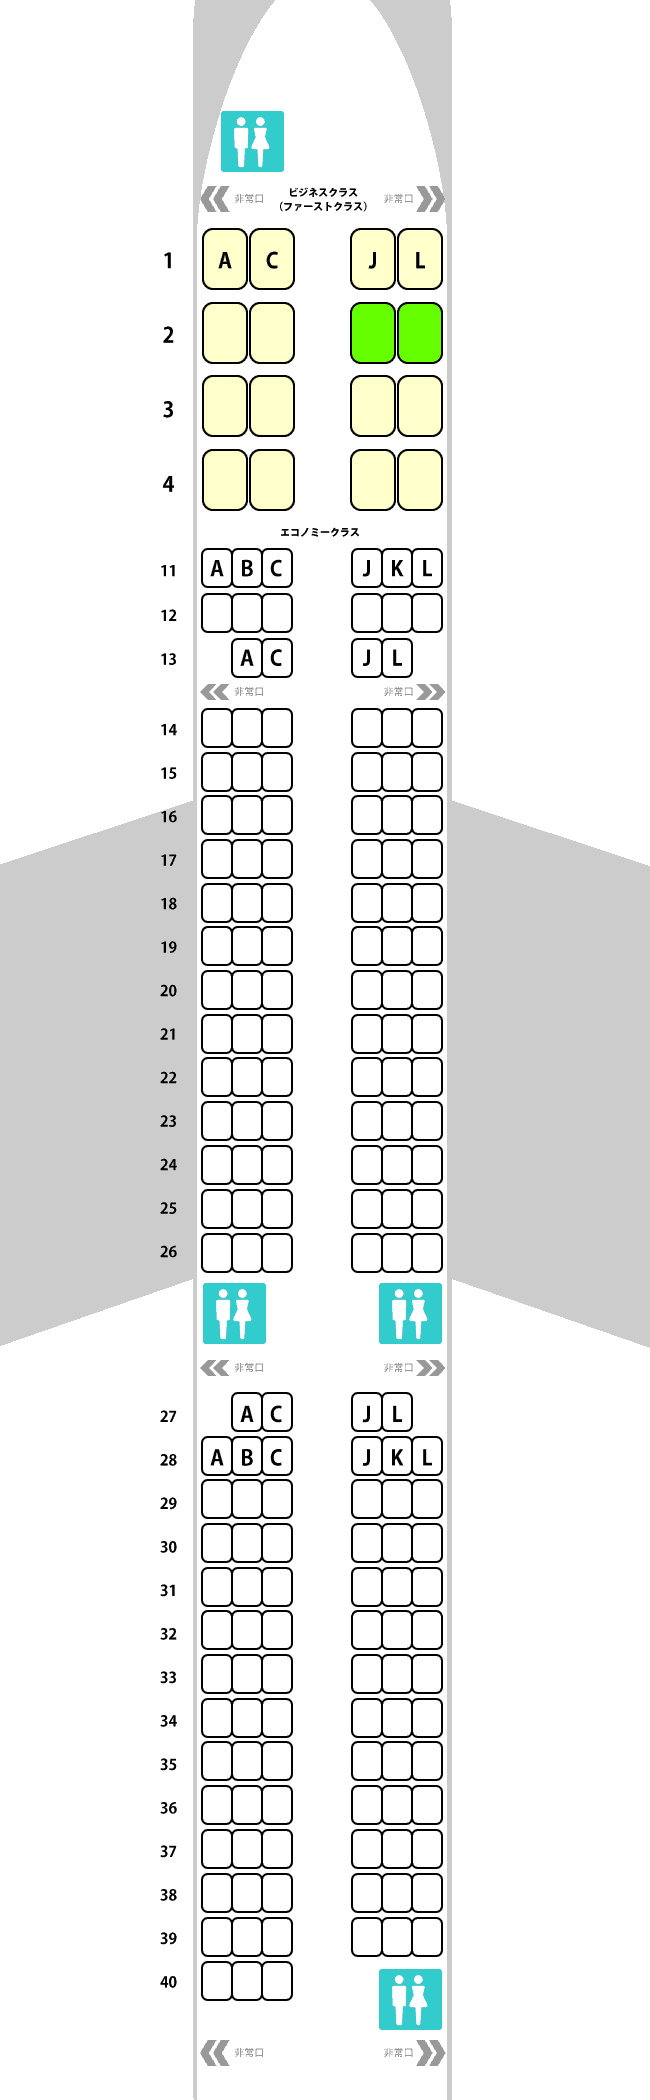 中国国際航空 A321-200 座席表